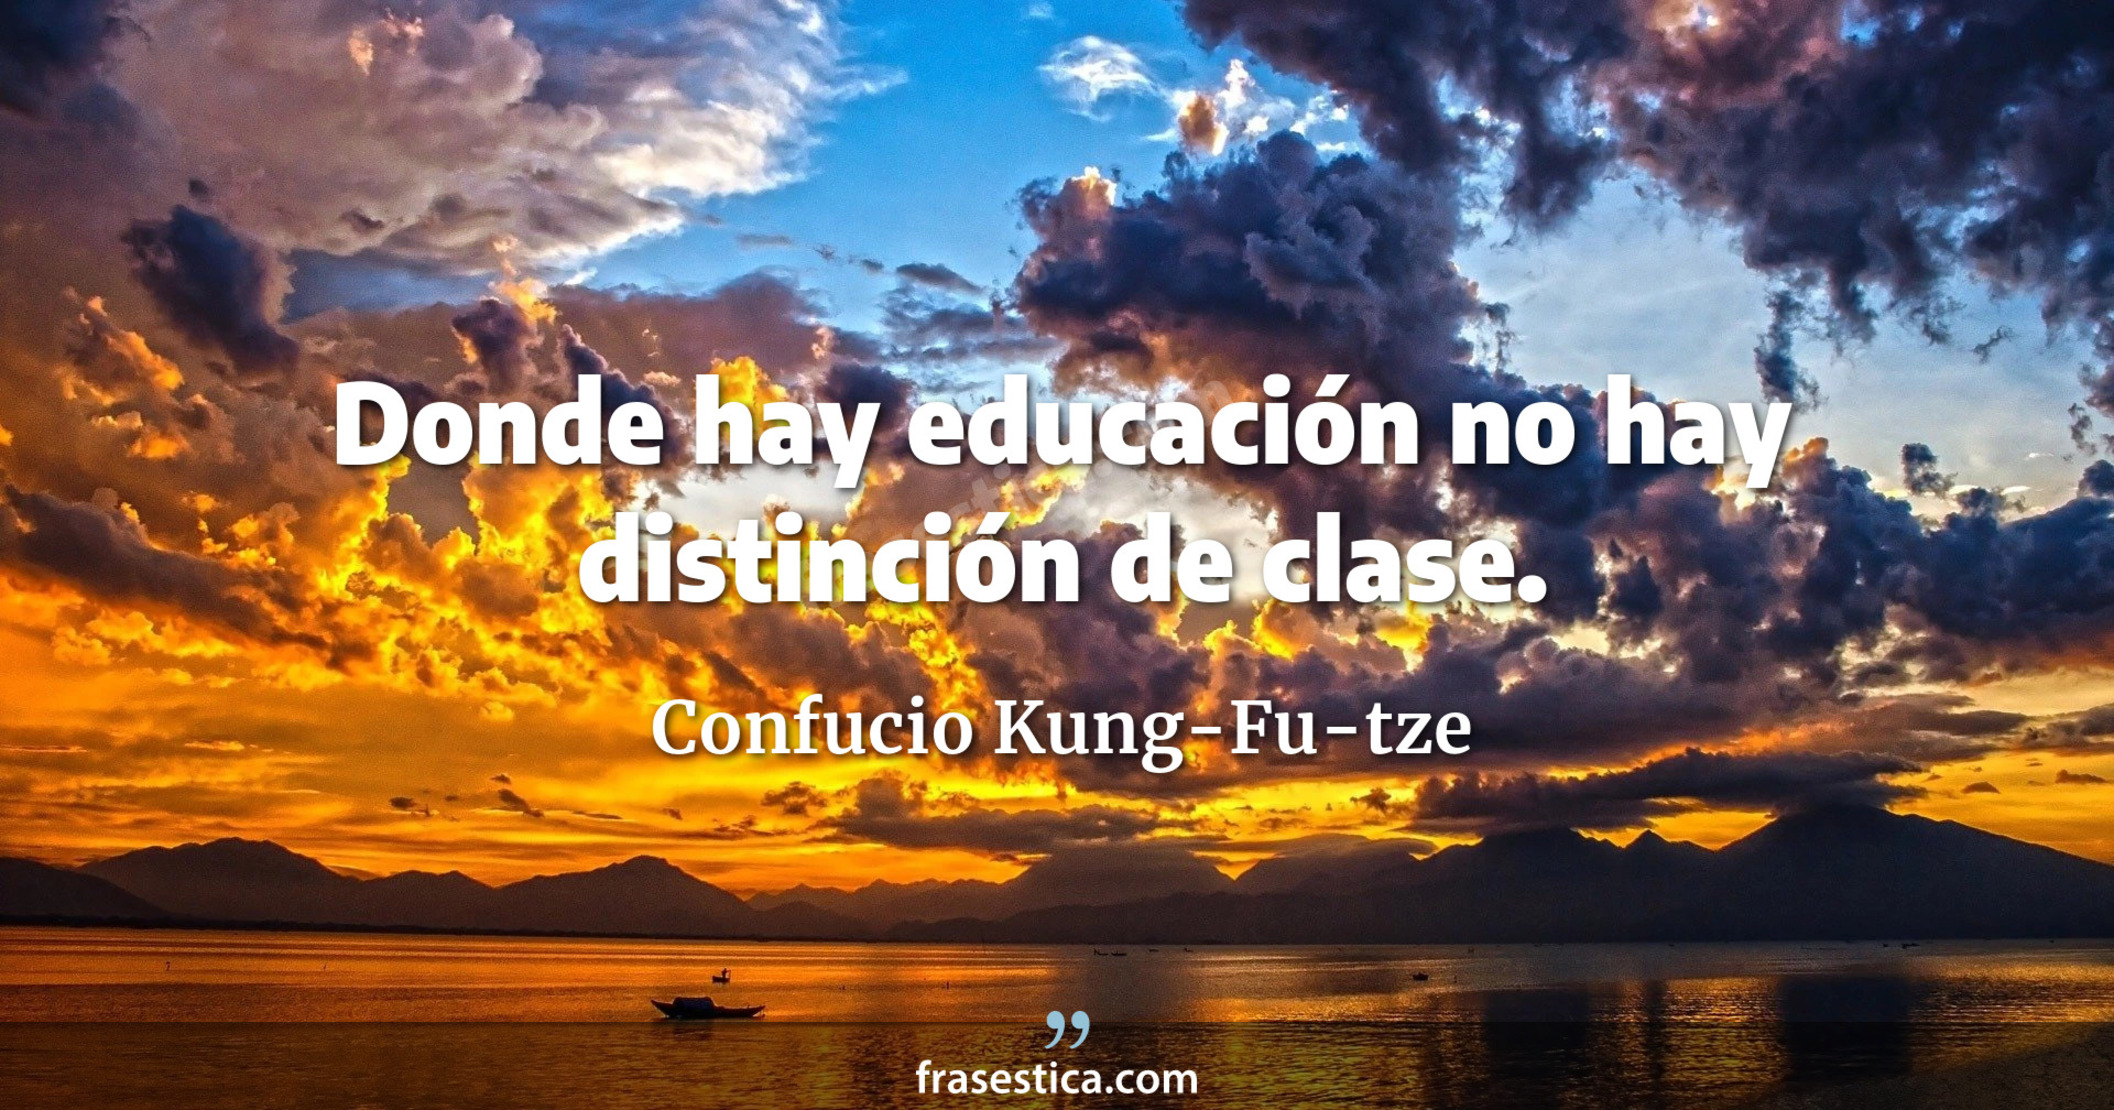 Donde hay educación no hay distinción de clase. - Confucio Kung-Fu-tze